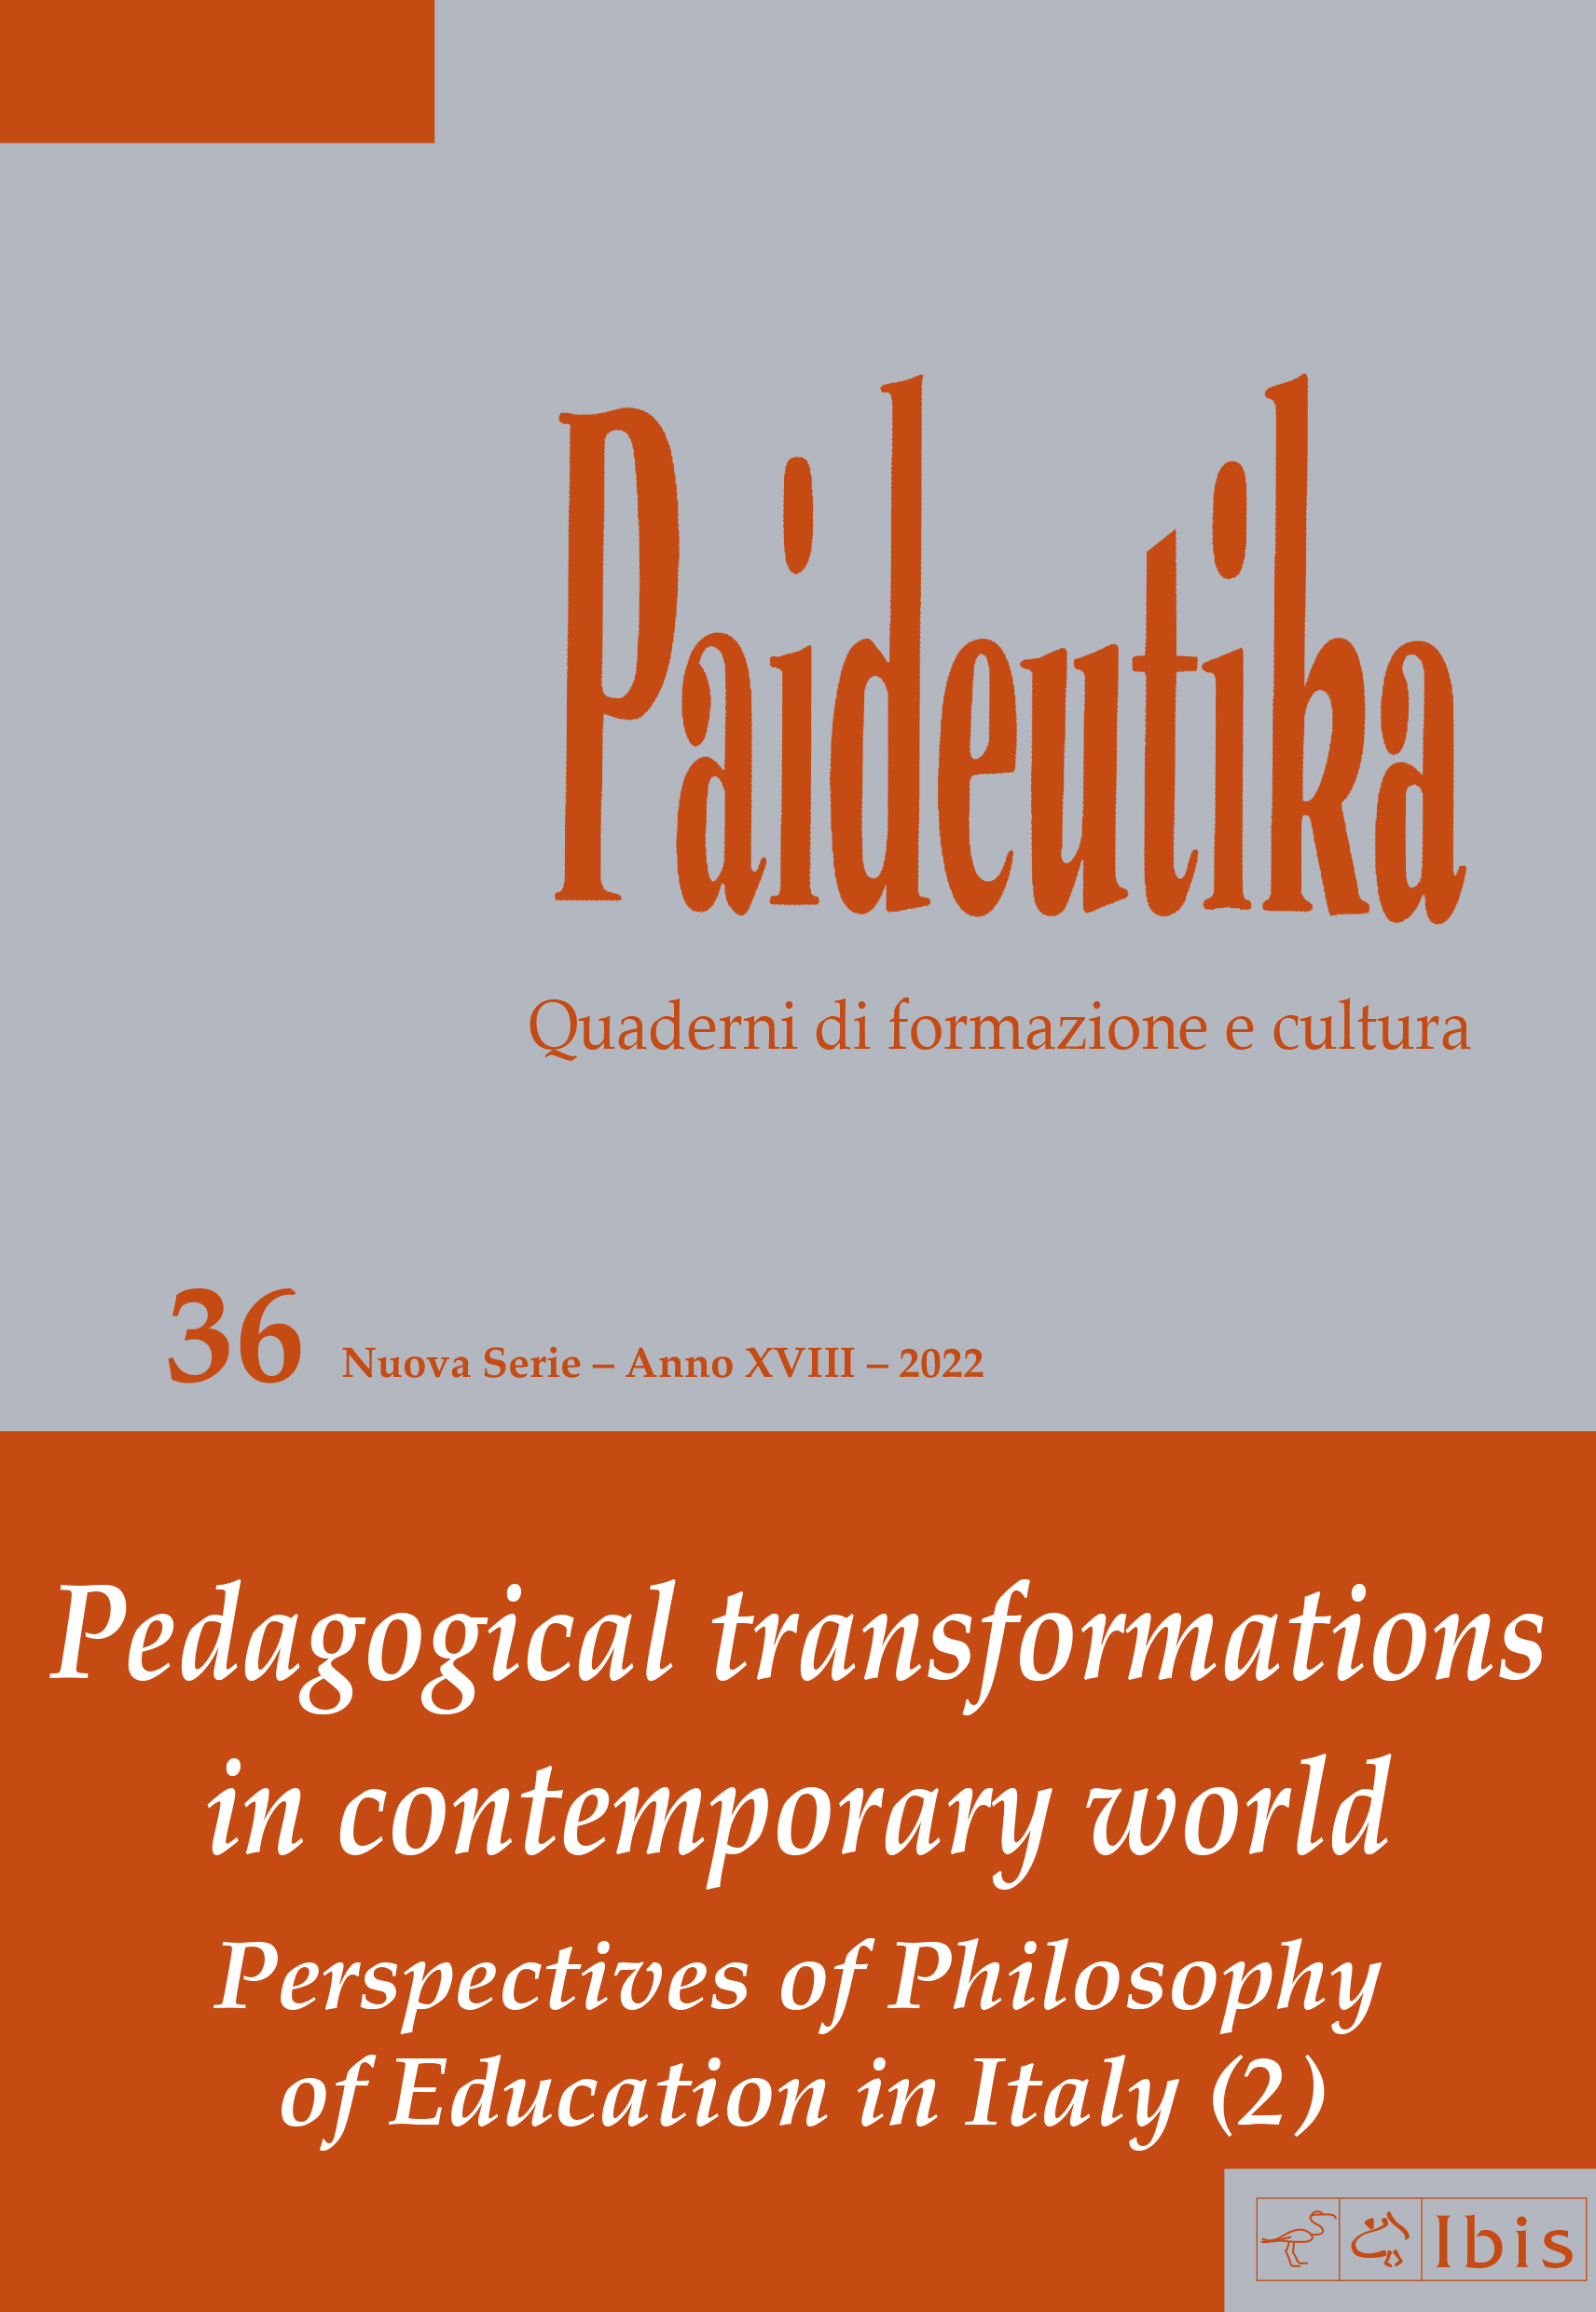 					Visualizza N. 36 (2022): Trasformazioni pedagogiche nella contemporaneità. Prospettive filosofico-educative in Italia (2) 
				